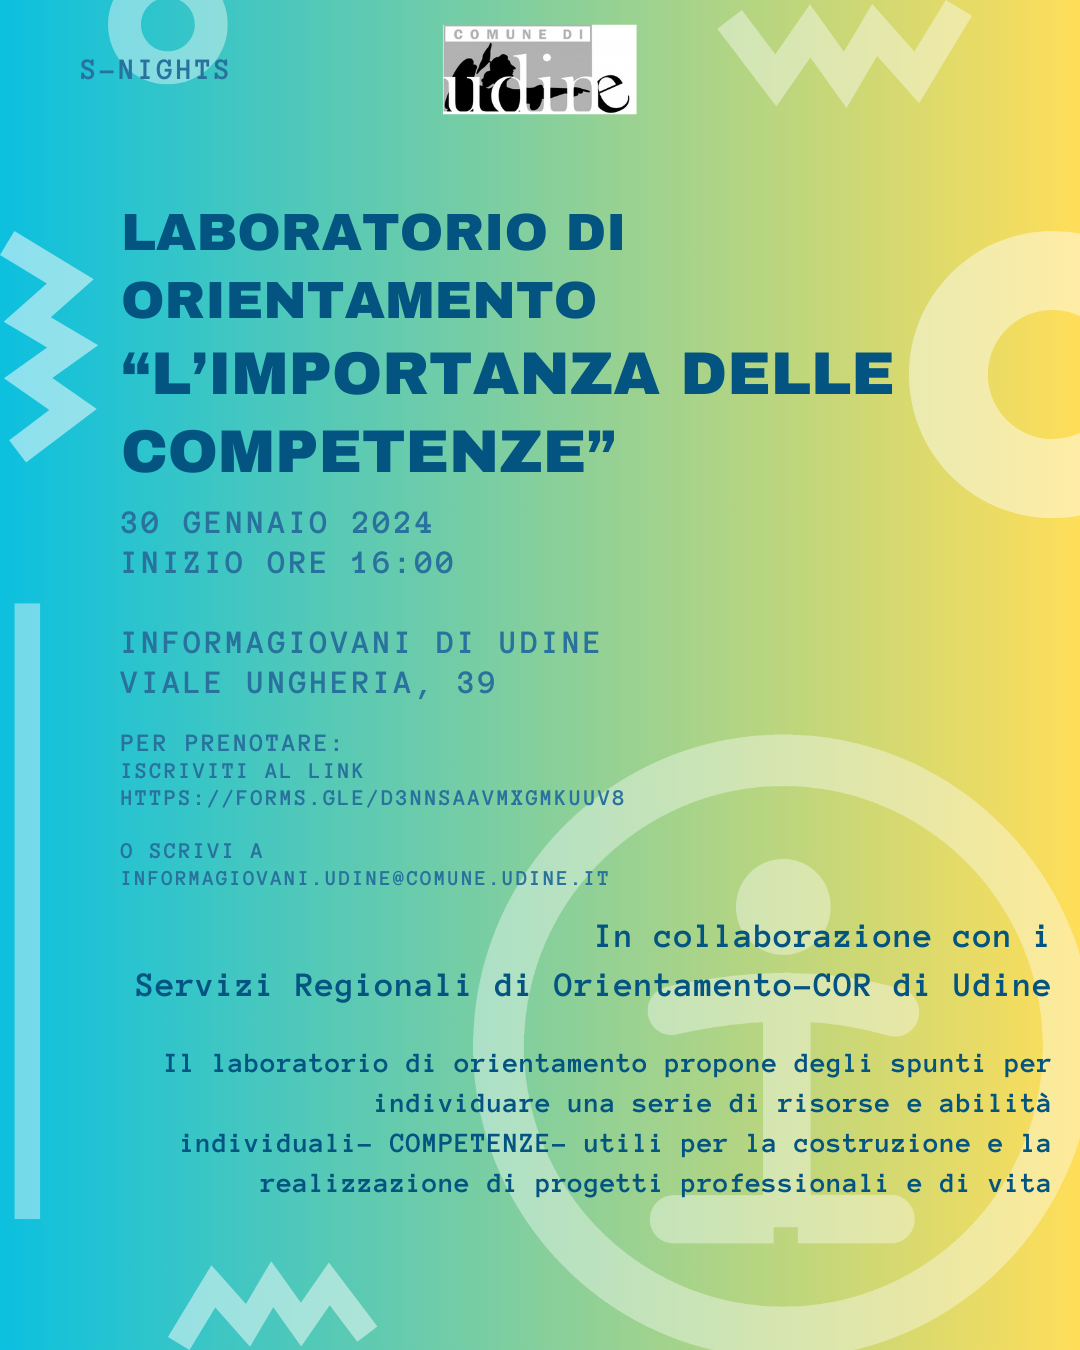 Laboratorio di Orientamento - L'IMPORTANZA DELLE COMPETENZE - c/o Informagiovani di Udine in collaborazione con il COR di UDINE